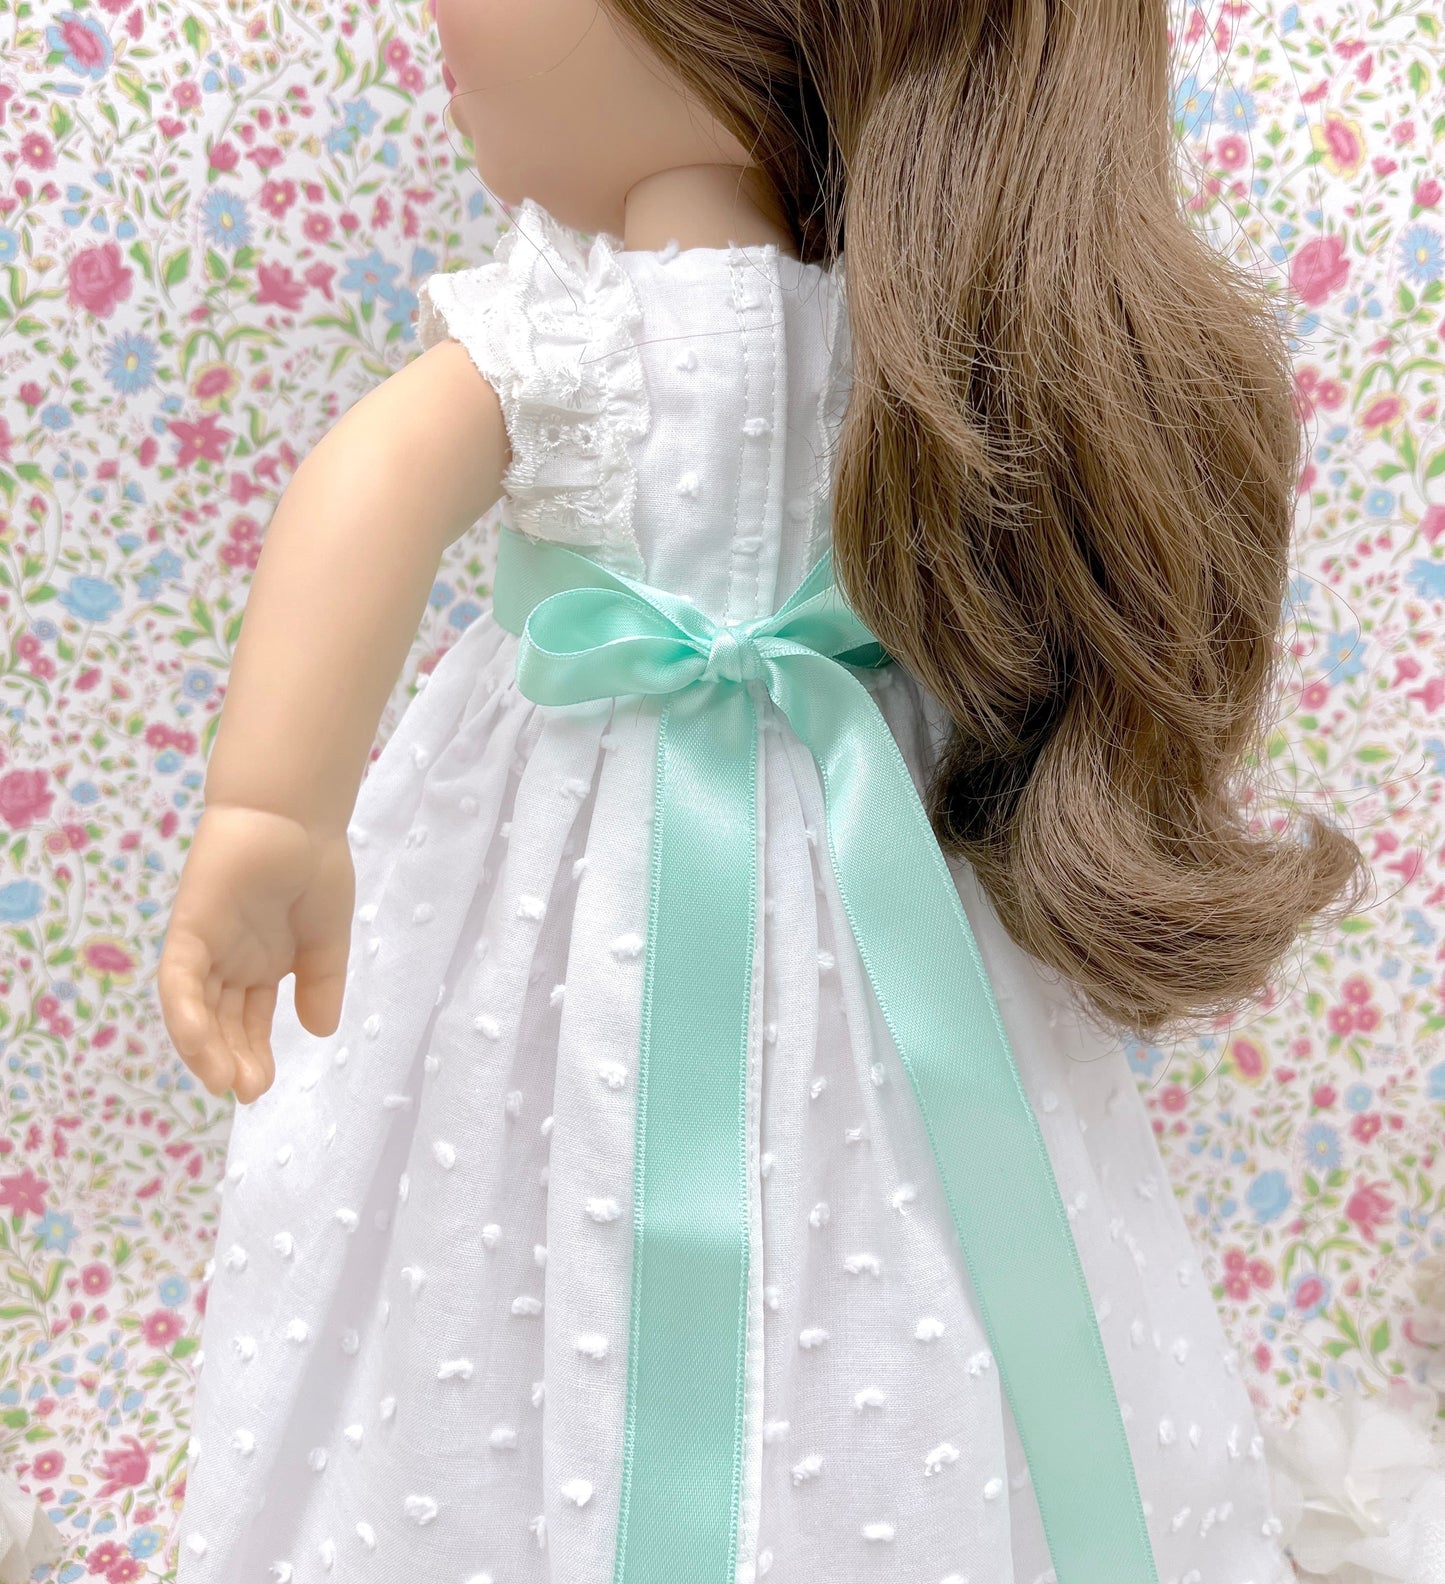 Muñeca de comunión personalizada con vestido Brigitte Plumeti